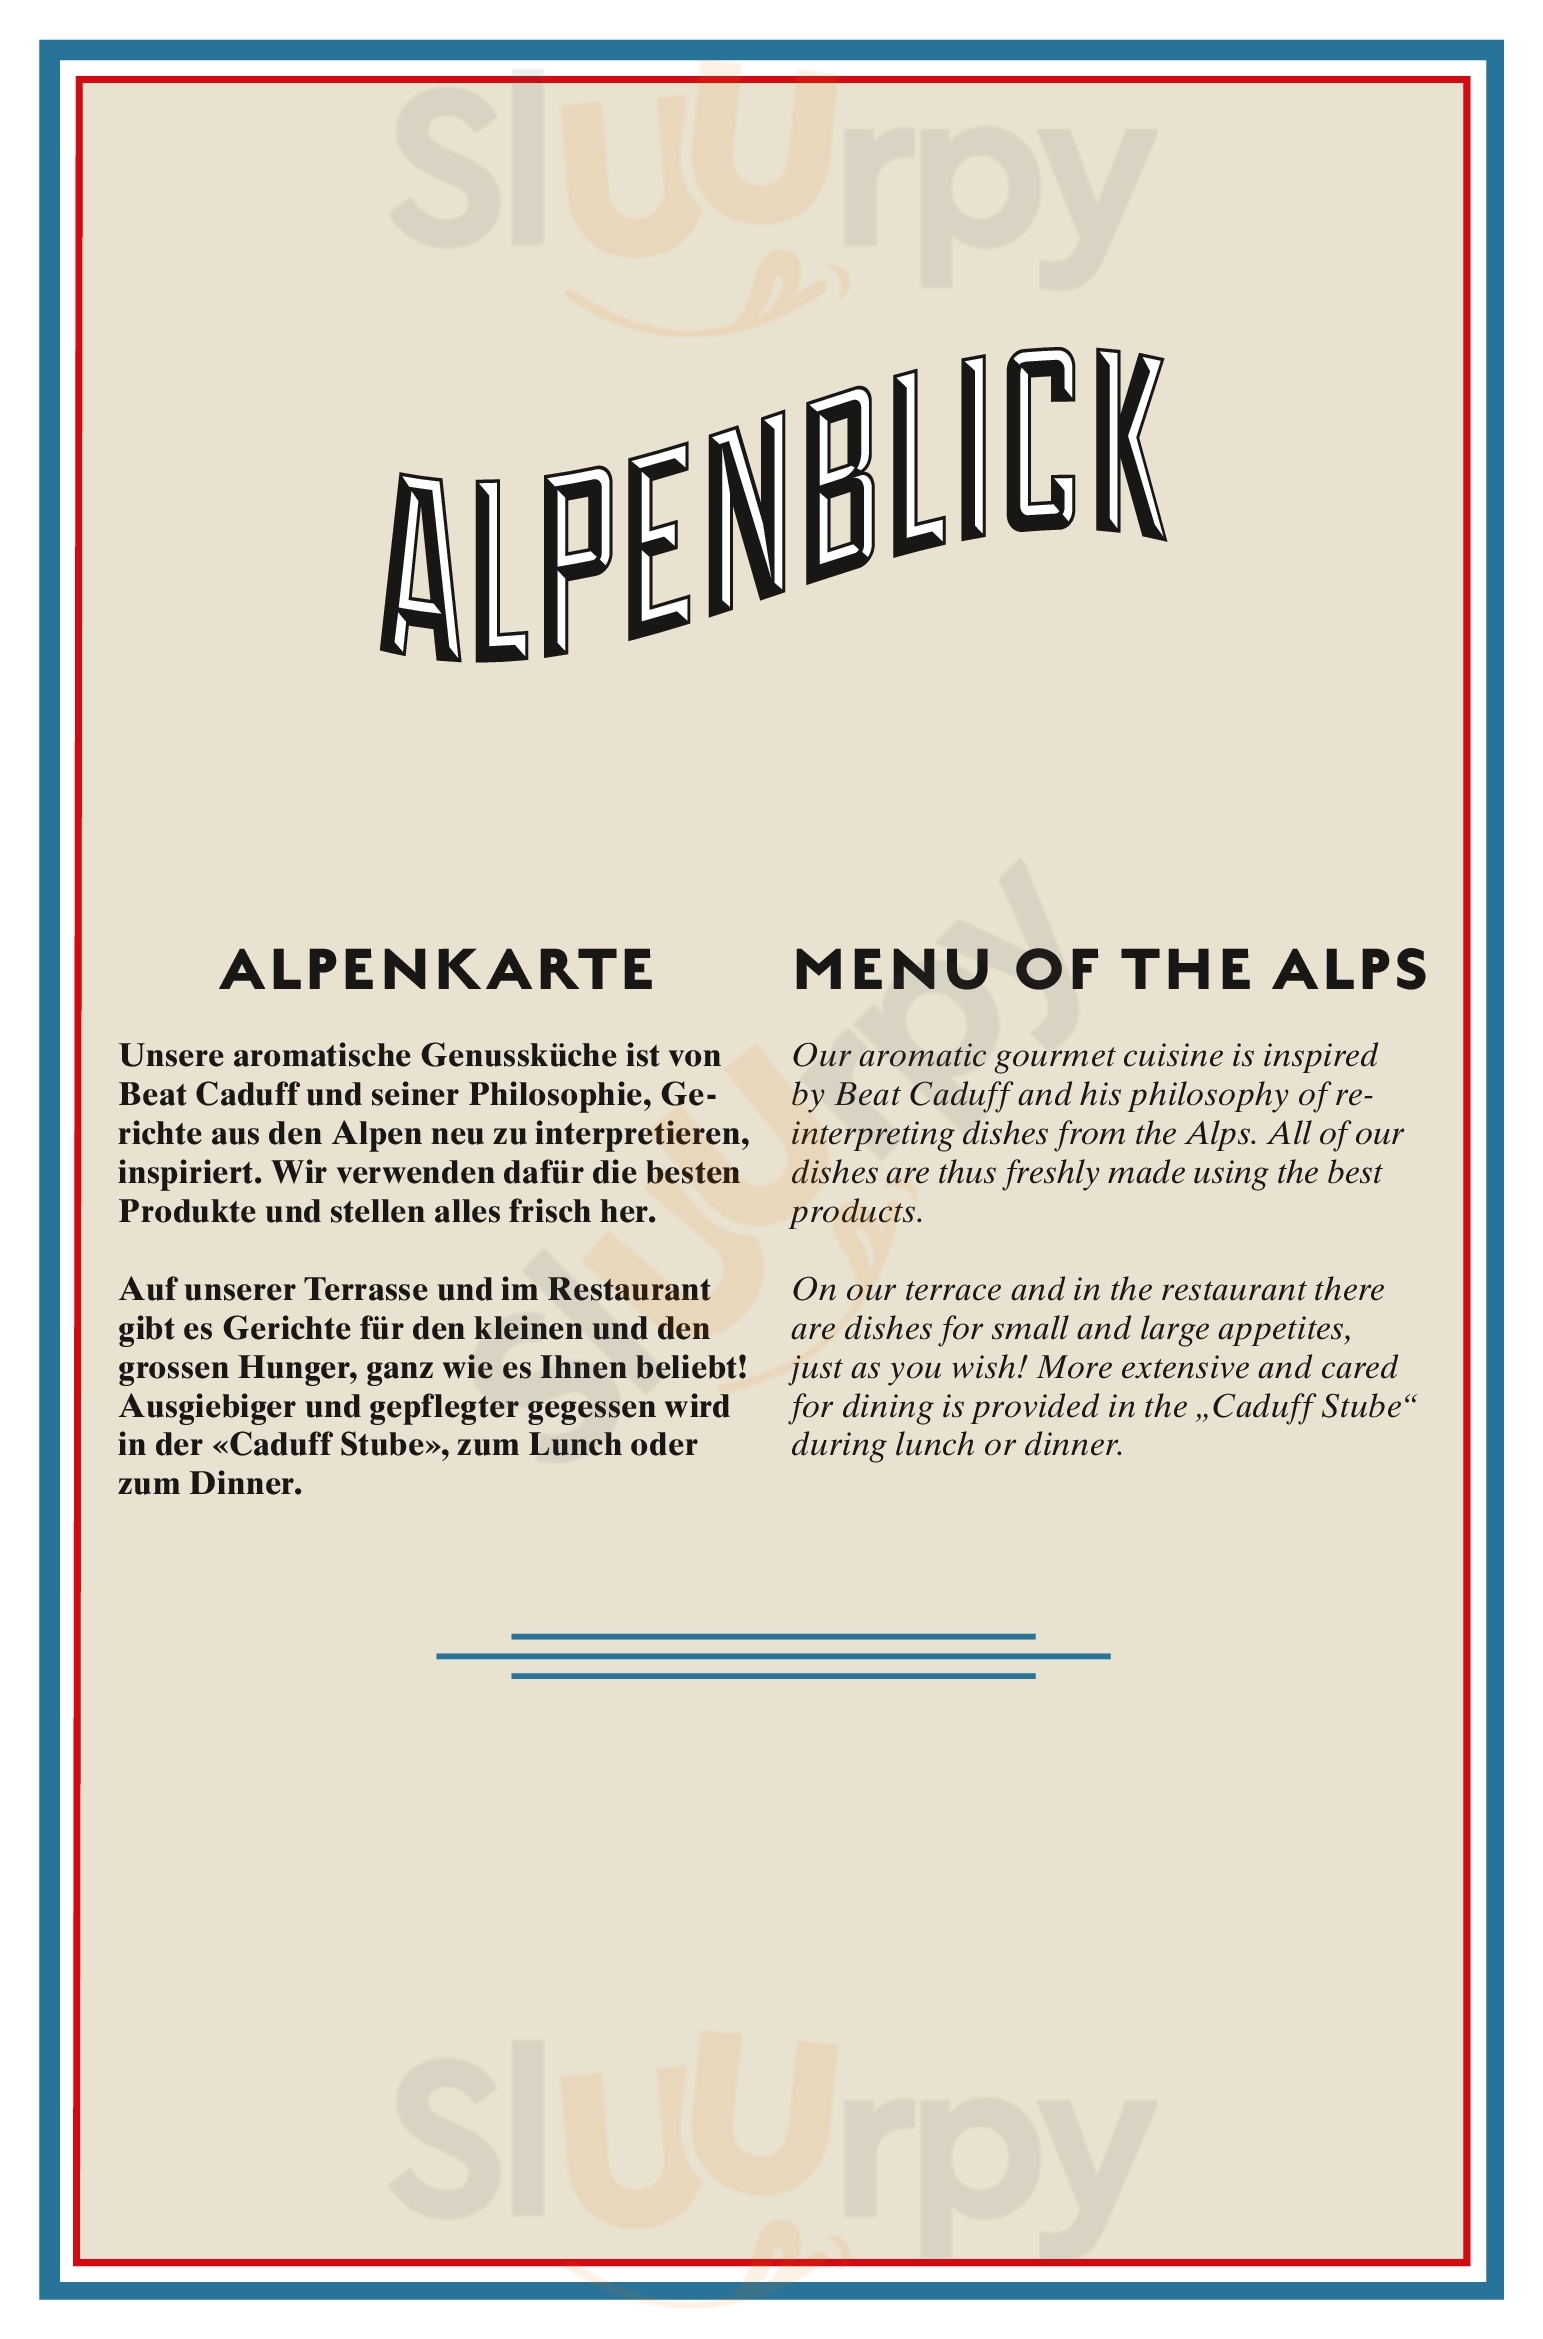 Alpenblick Bergrestaurant & Hotel Arosa Menu - 1